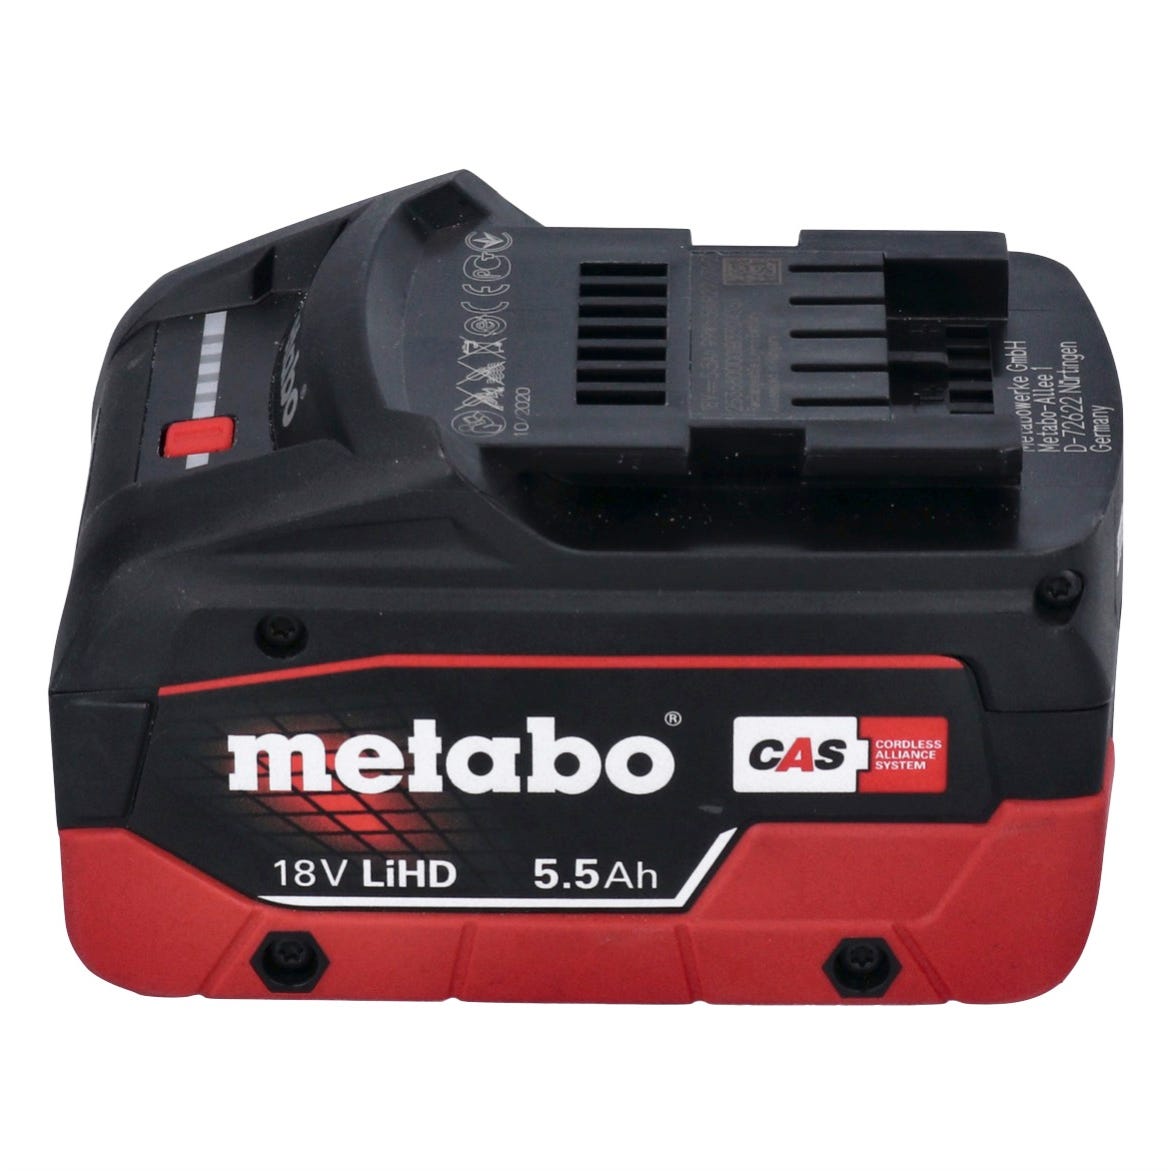 Metabo Meuleuse d'angle sans fil CC 18 LTX Brushless + 1x Batterie 5,5Ah + Coffret de transport MetaLoc - sans chargeur 3